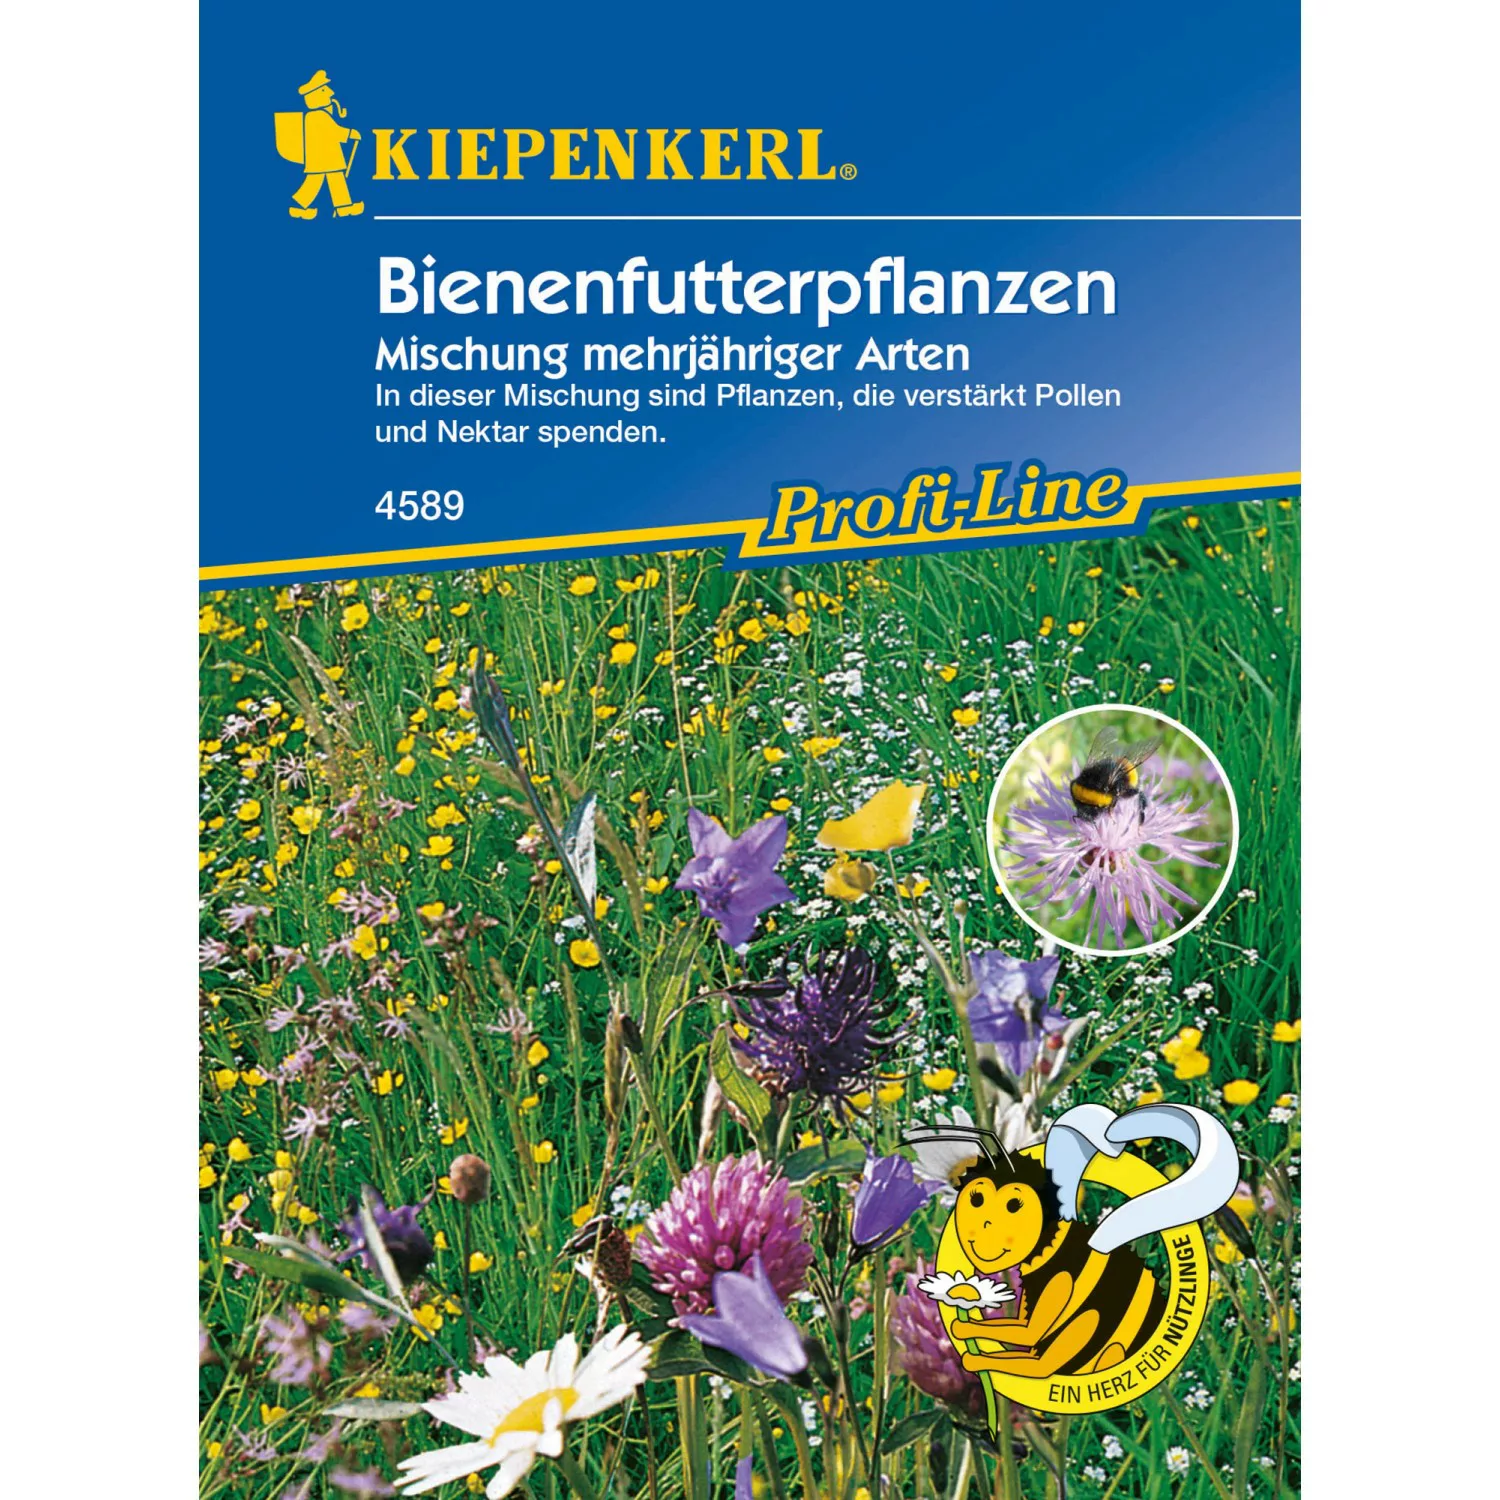 Kiepenkerl Profi-Line Bienenfutterpflanzen Mischung mehrjährig günstig online kaufen